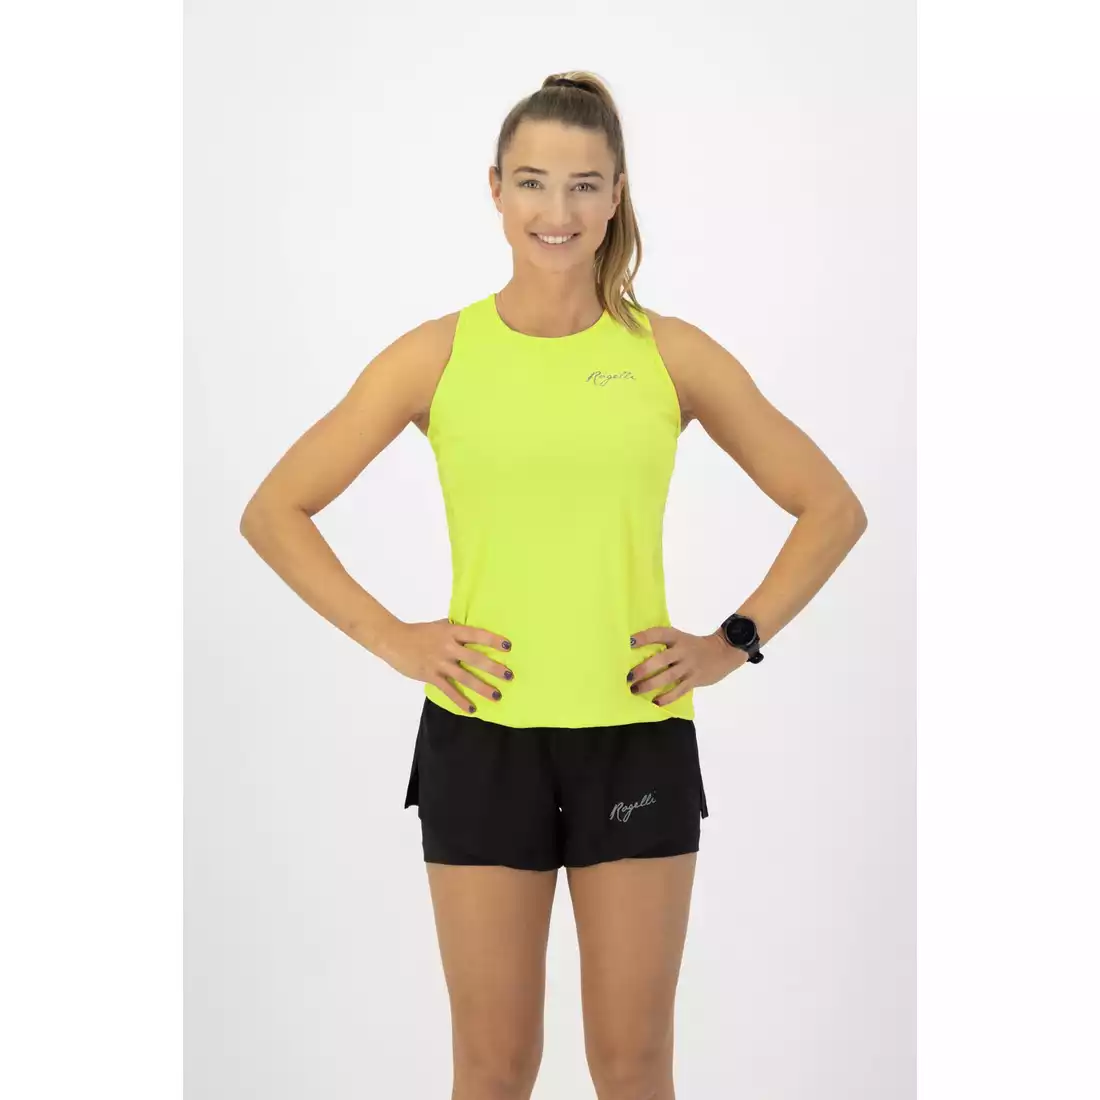 Rogelli CORE women's running vest, fluorine yellow